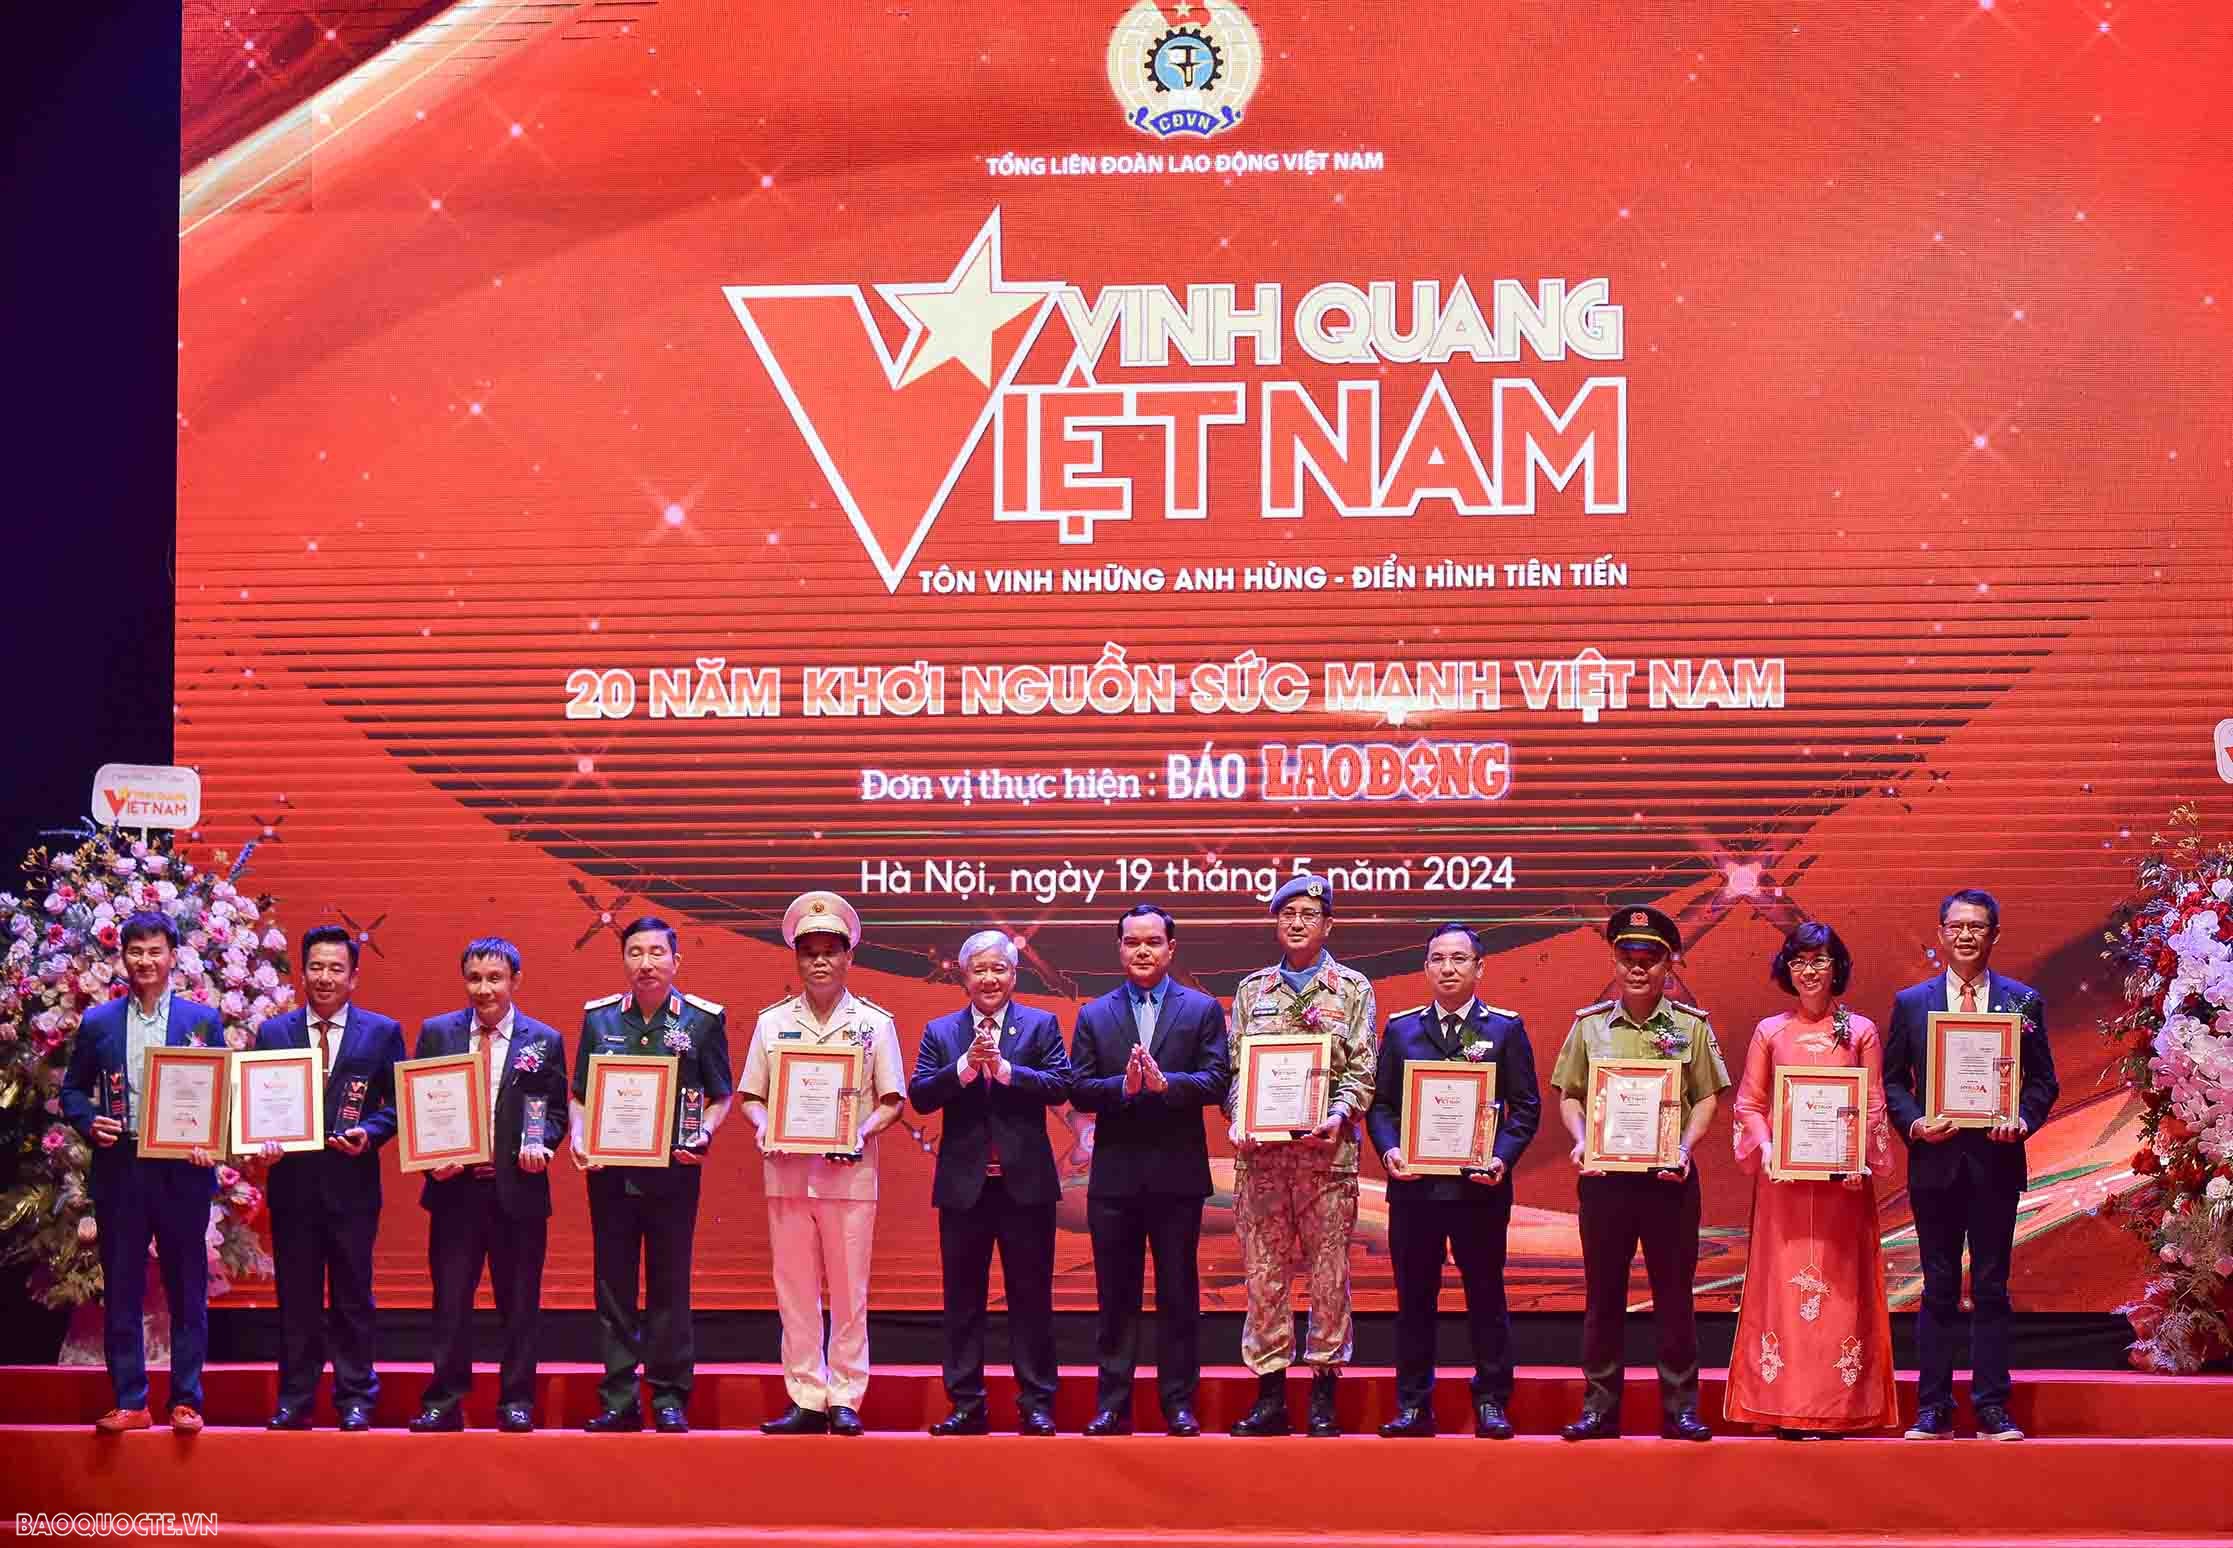 Vụ Ngoại giao Văn hóa và UNESCO được vinh danh tại Chương trình Vinh quang Việt Nam